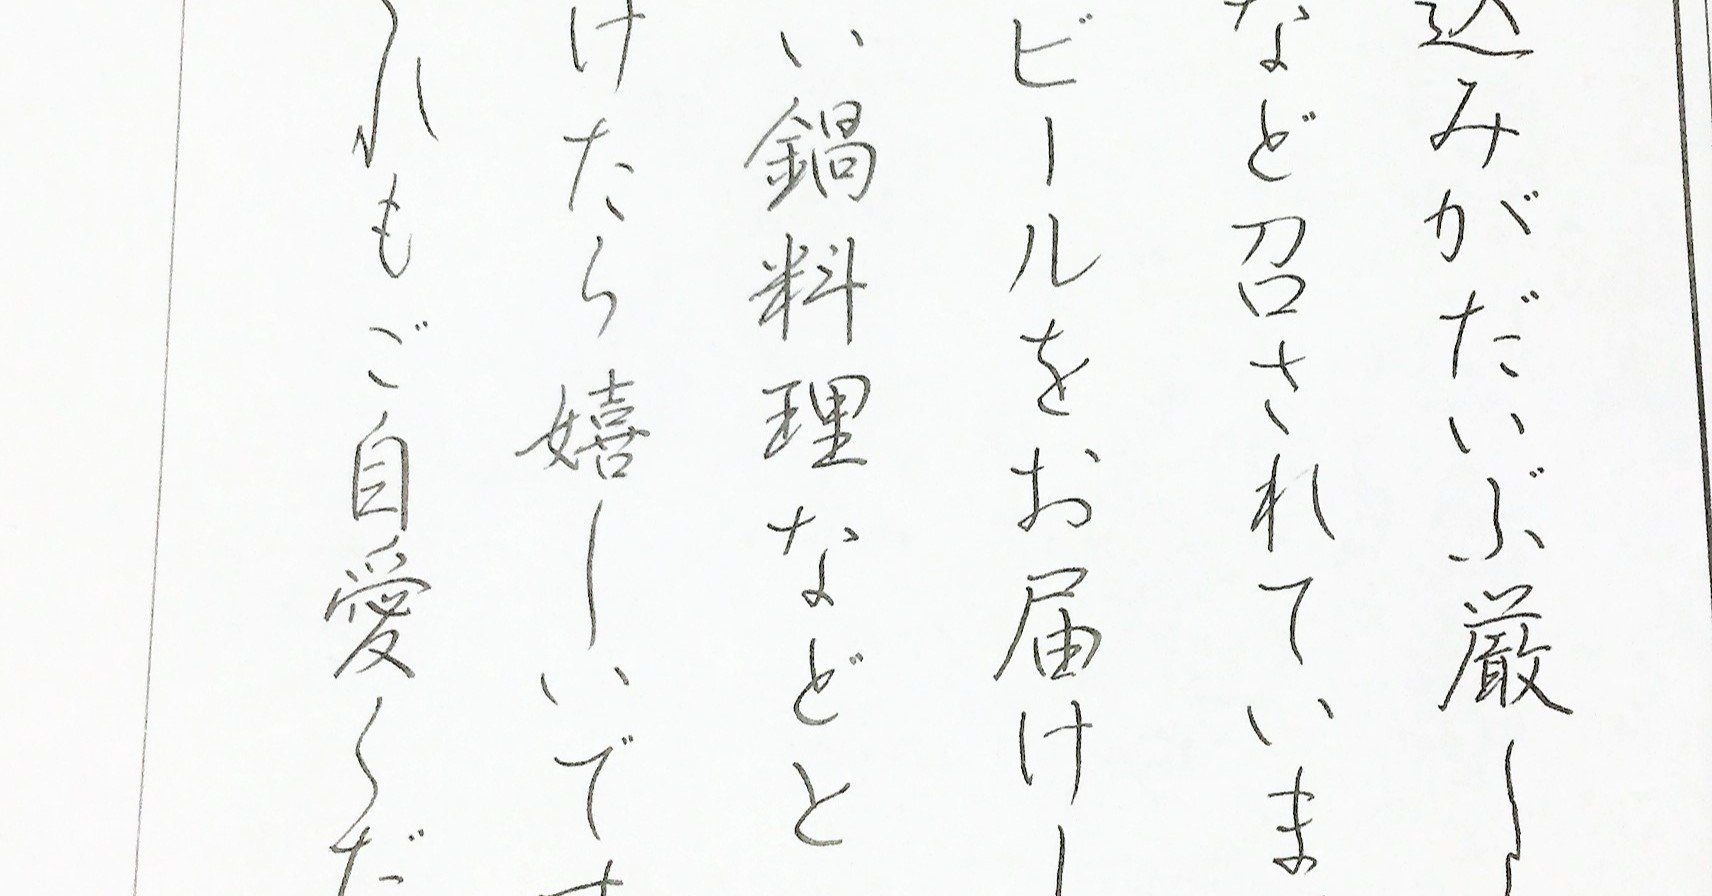 上品で美しい字が書ける 大人の平仮名表 赤松久美子 Note